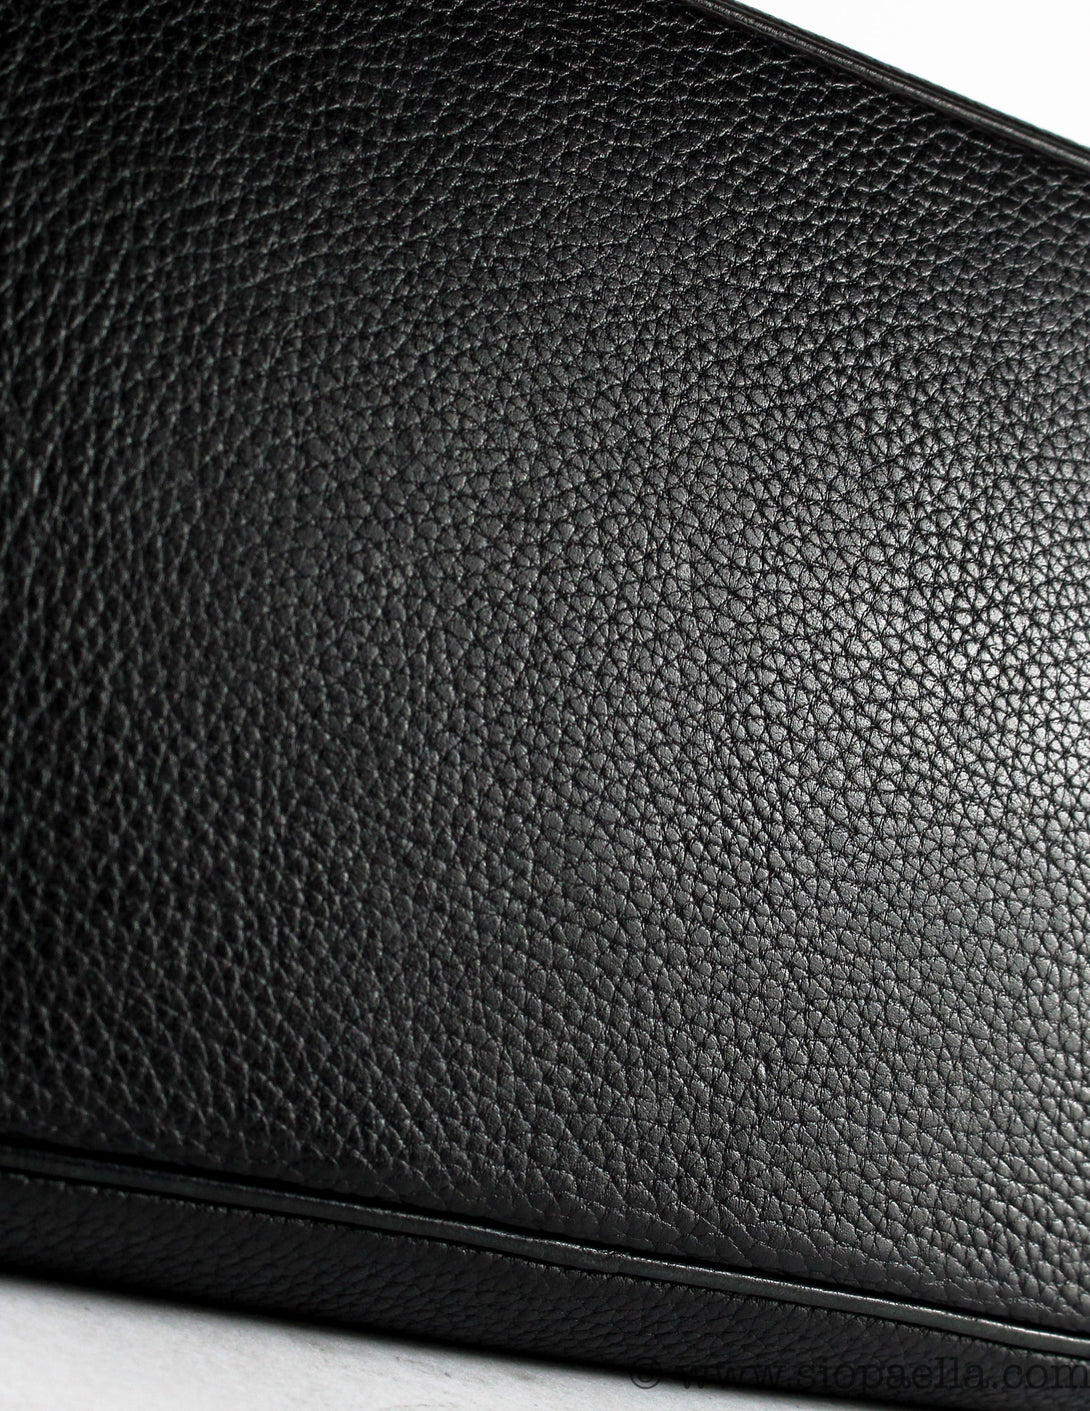 Hermès Togo Leather Birkin 35 - Siopaella Designer Exchange